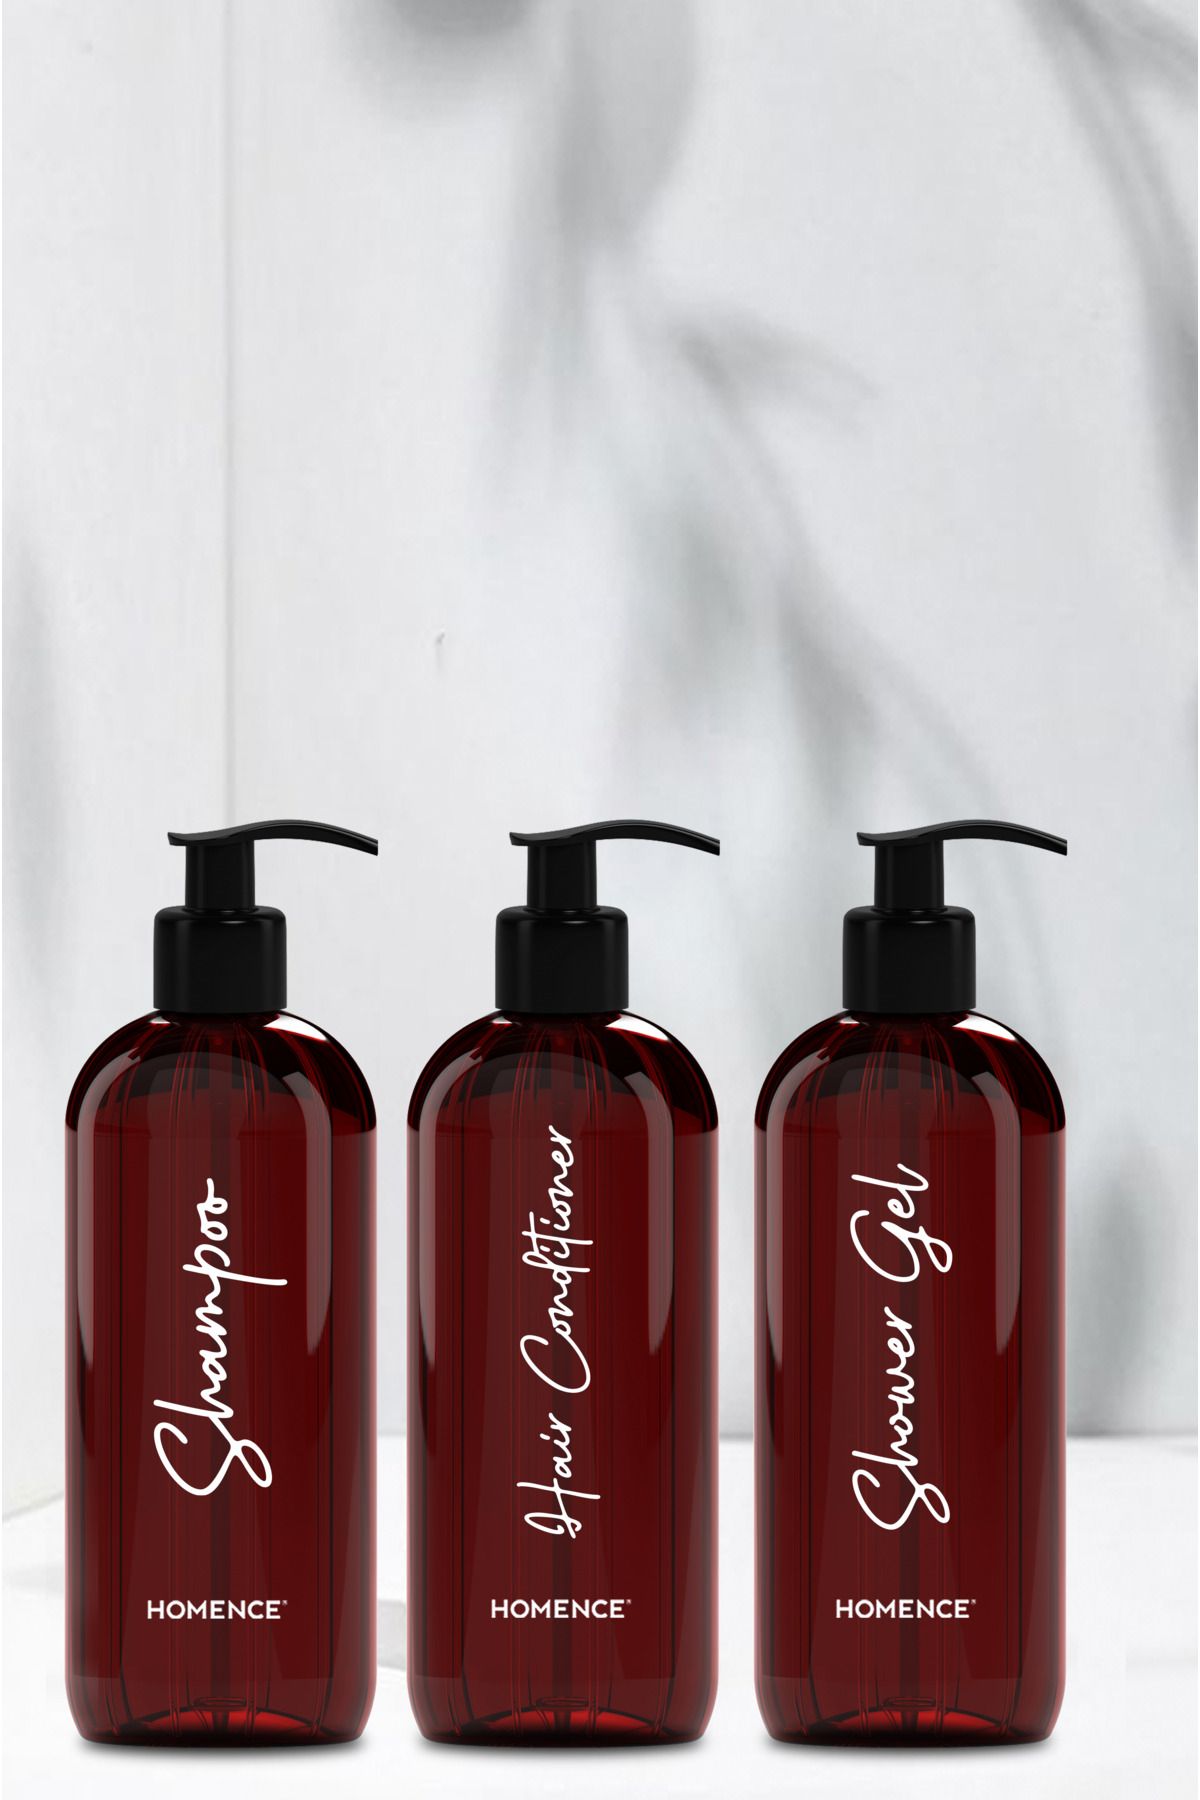 homence Şampuan Duş Jeli Saç Kremi Baskılı Plastik Şişe Banyo Seti 3'lü Amber Sabunluk 500 ml